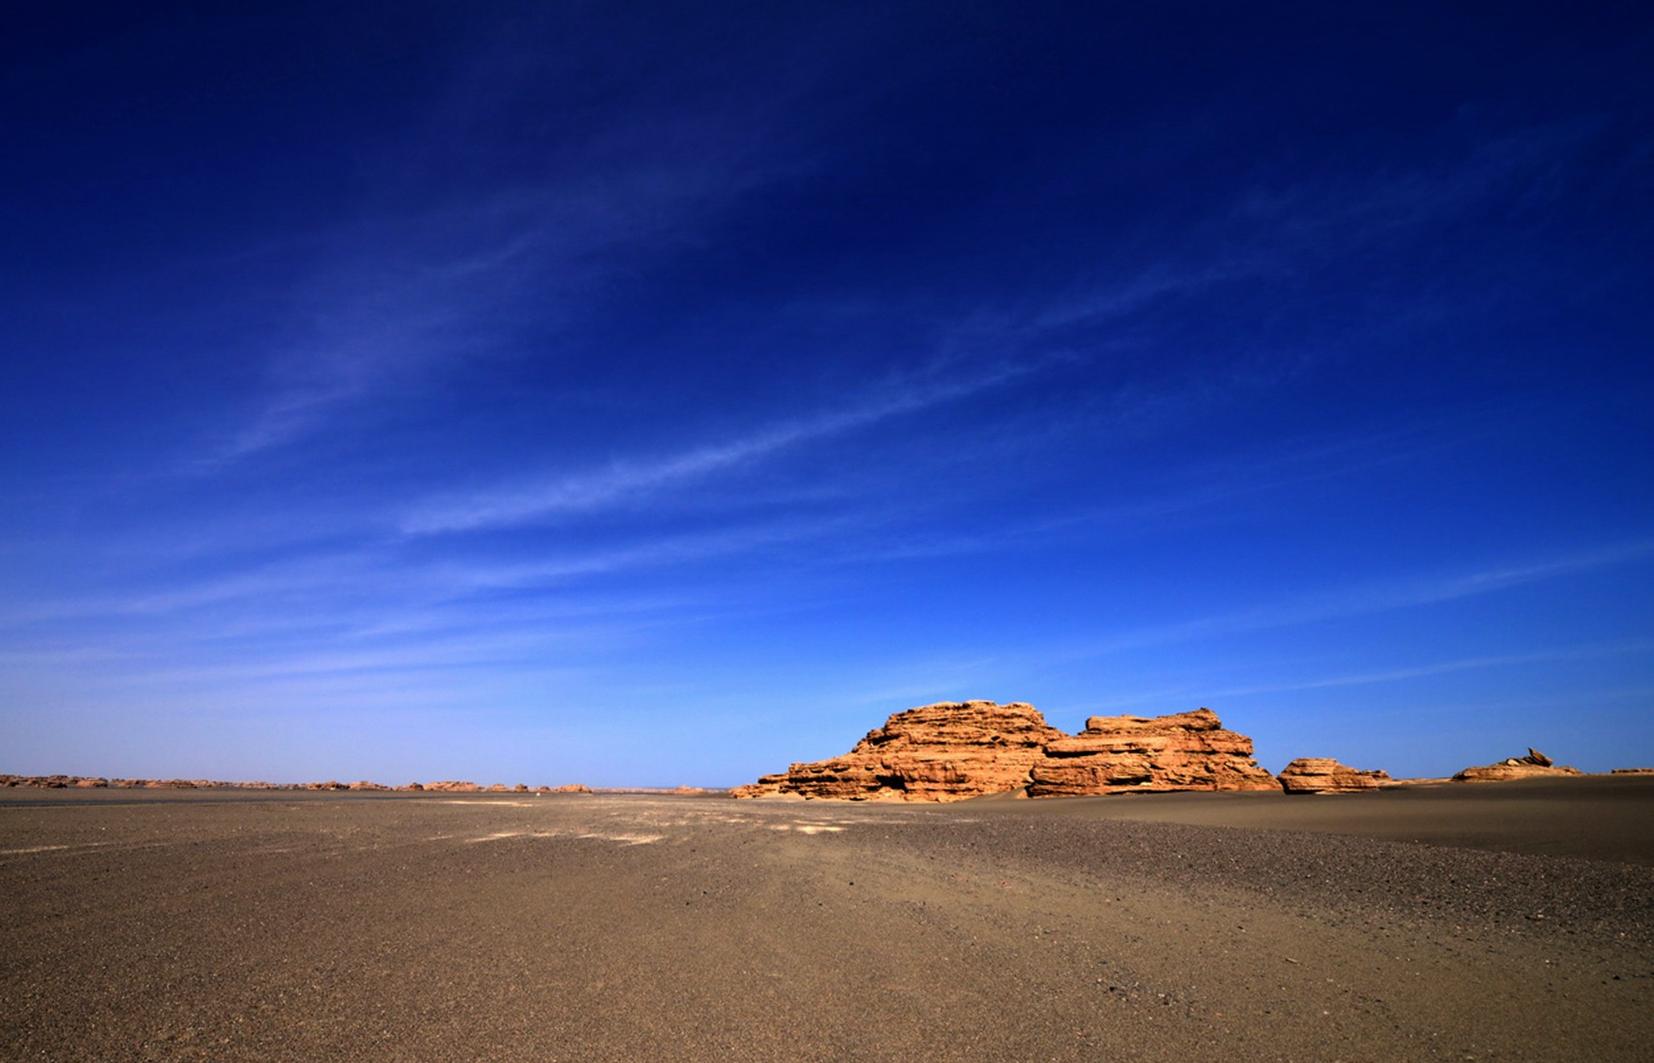 大漠边关旅游风景区图片